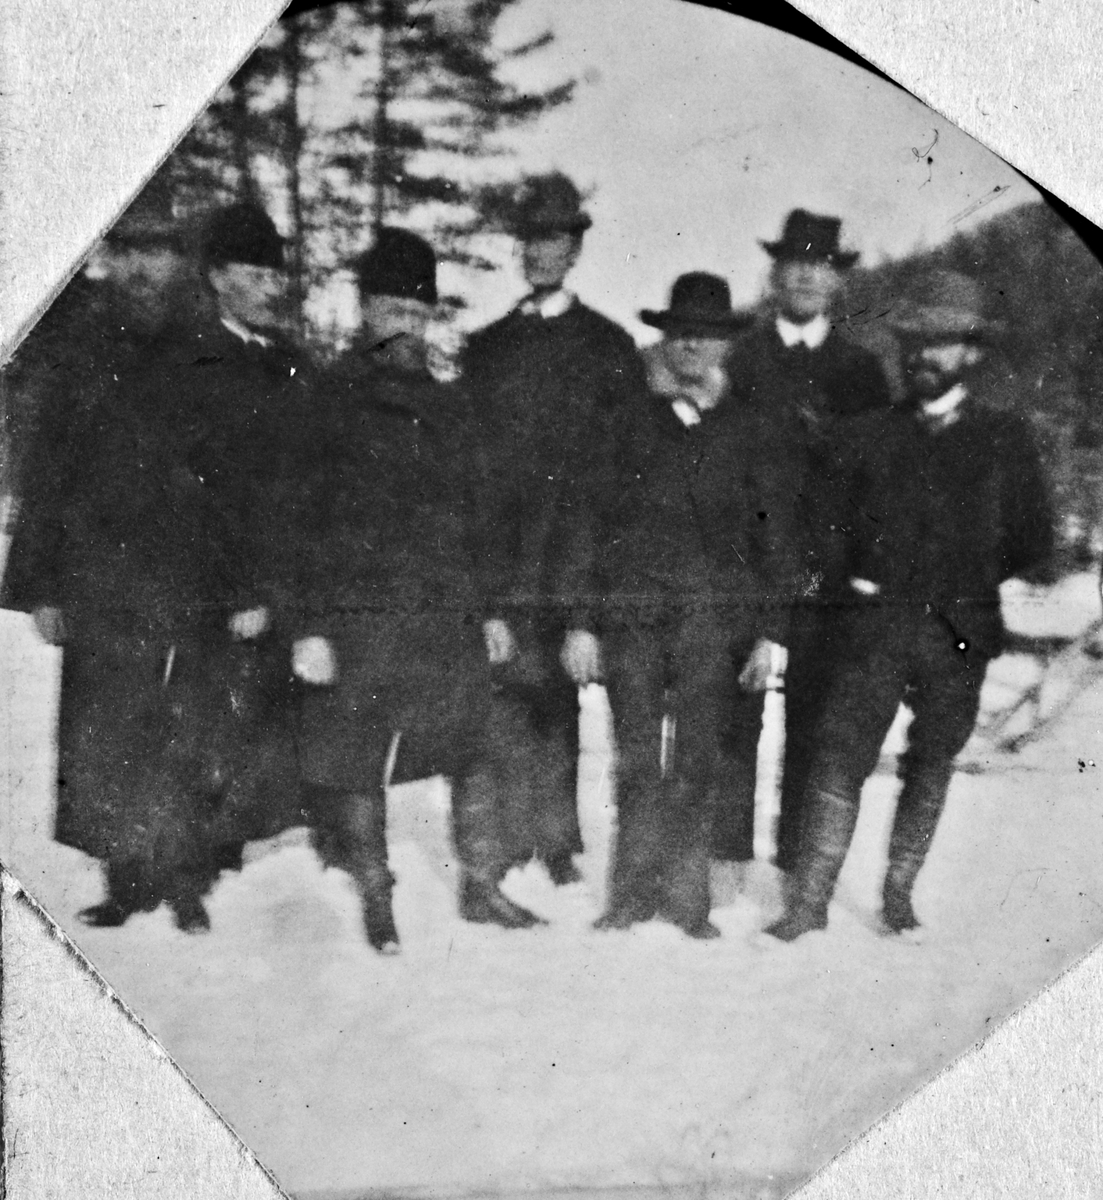 Gruppe menn med hatt i vinterlandskap, Fyresdal, Telemark. Anledning ukjent.